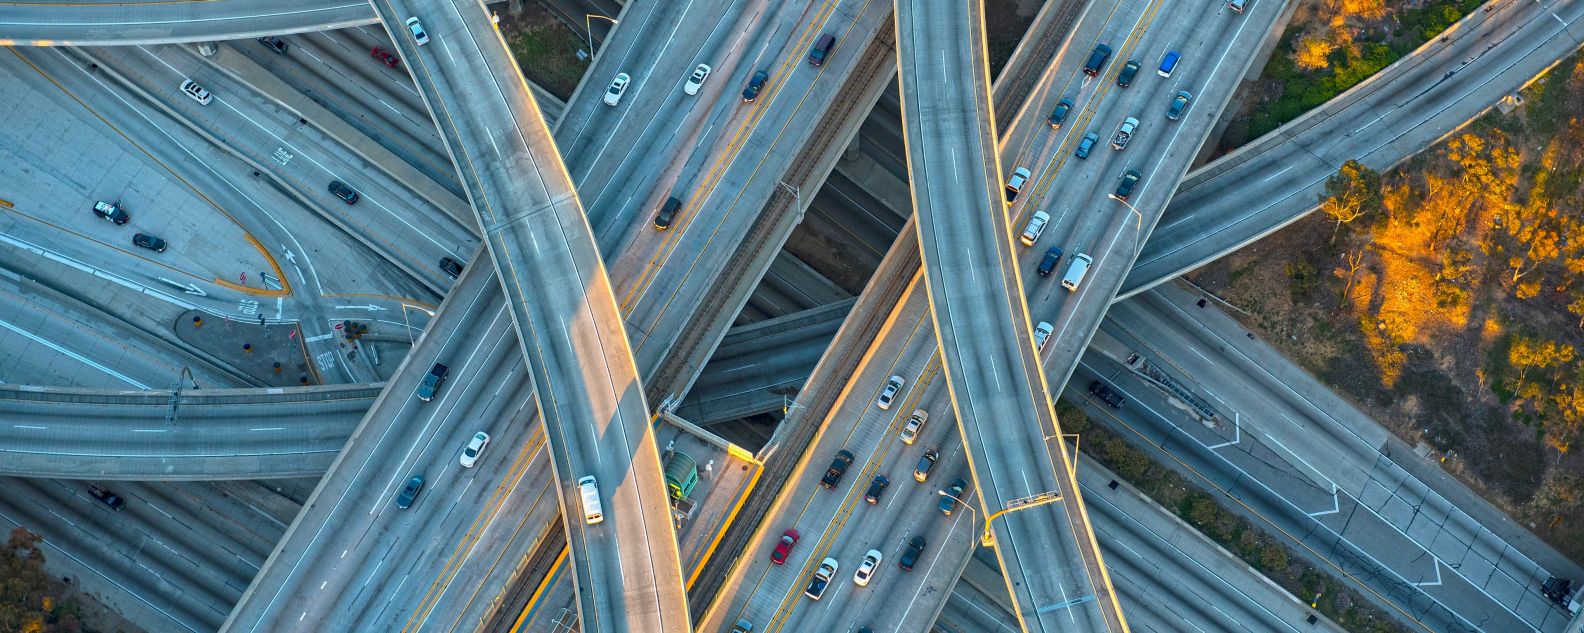 街並みの中の高速道路インターチェンジの空撮写真